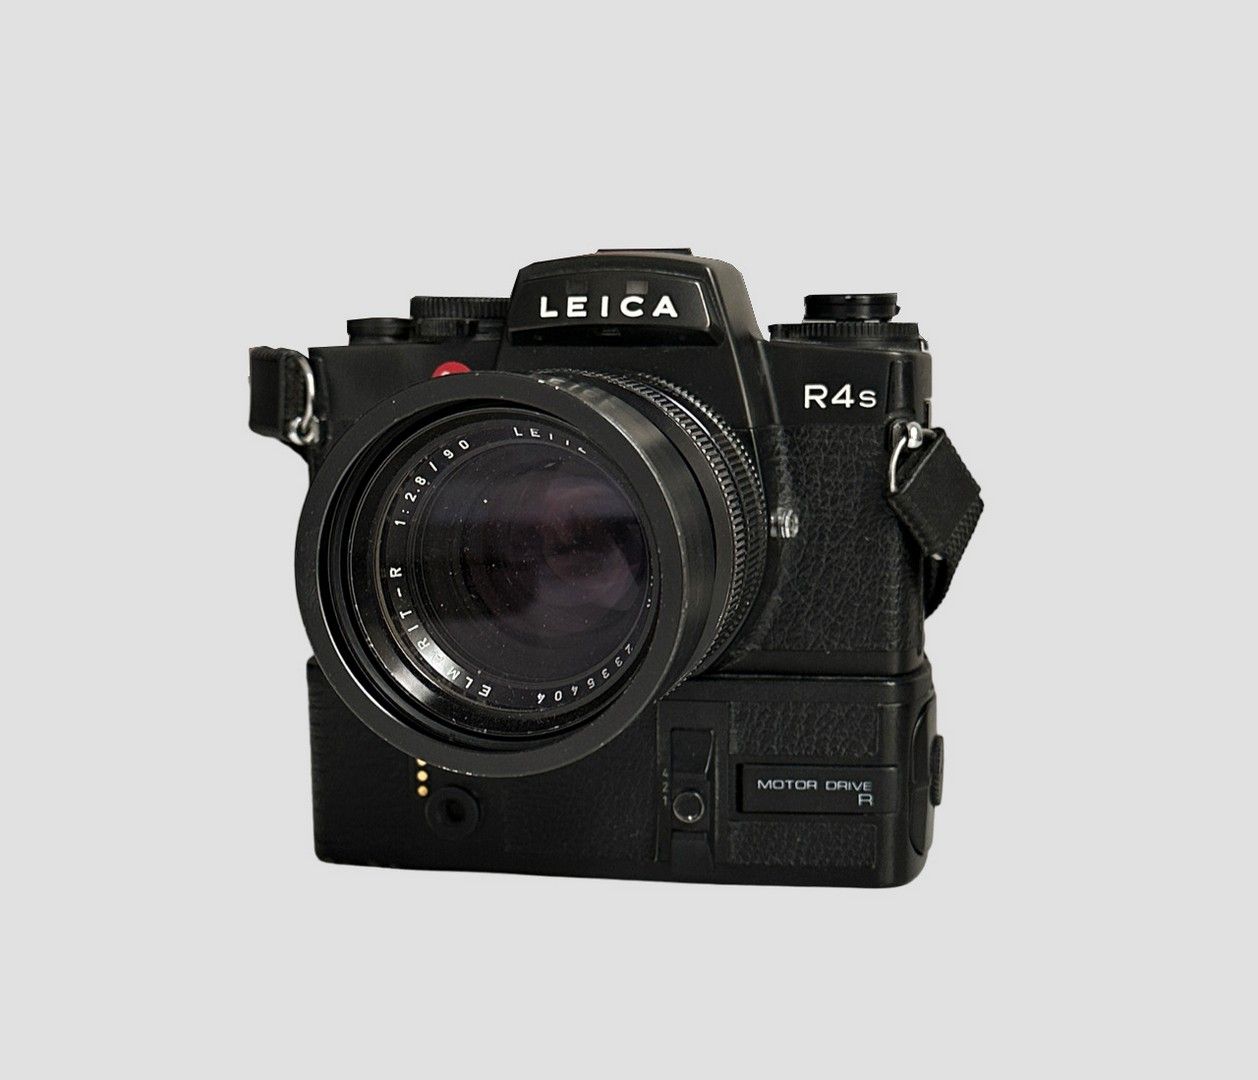 LEICA - APPAREIL PHOTO LEICA - KAMERA
Leica R4S und Leitz Wetzlar 90mm Objektiv,&hellip;